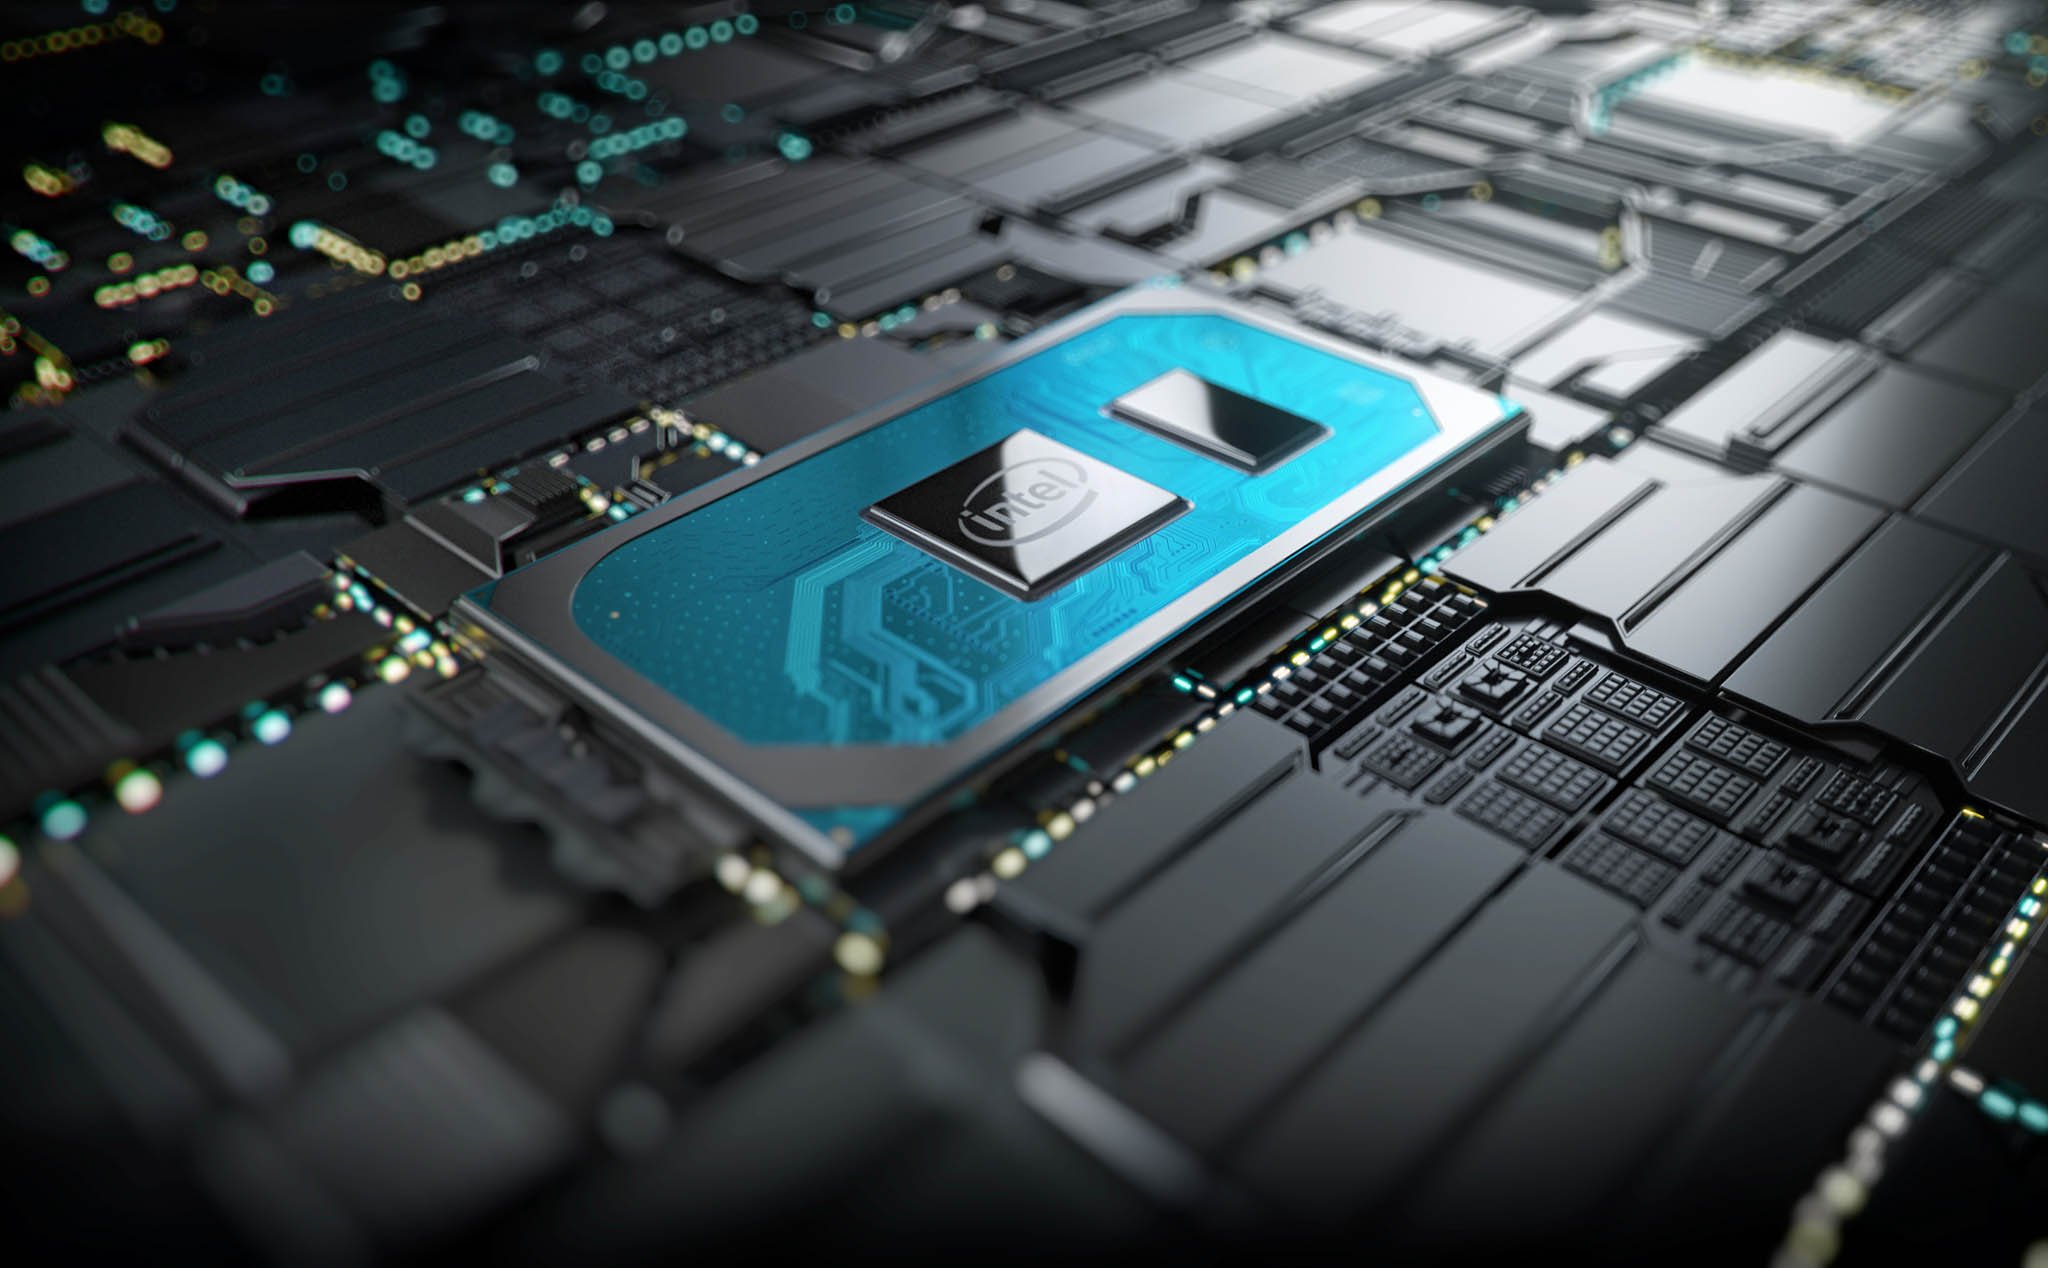 Chi tiết về Intel Ice Lake 10 nm, tích hợp Thunderbolt 3, GPU kiến trúc Gen11 mạnh hơn GeForce MX